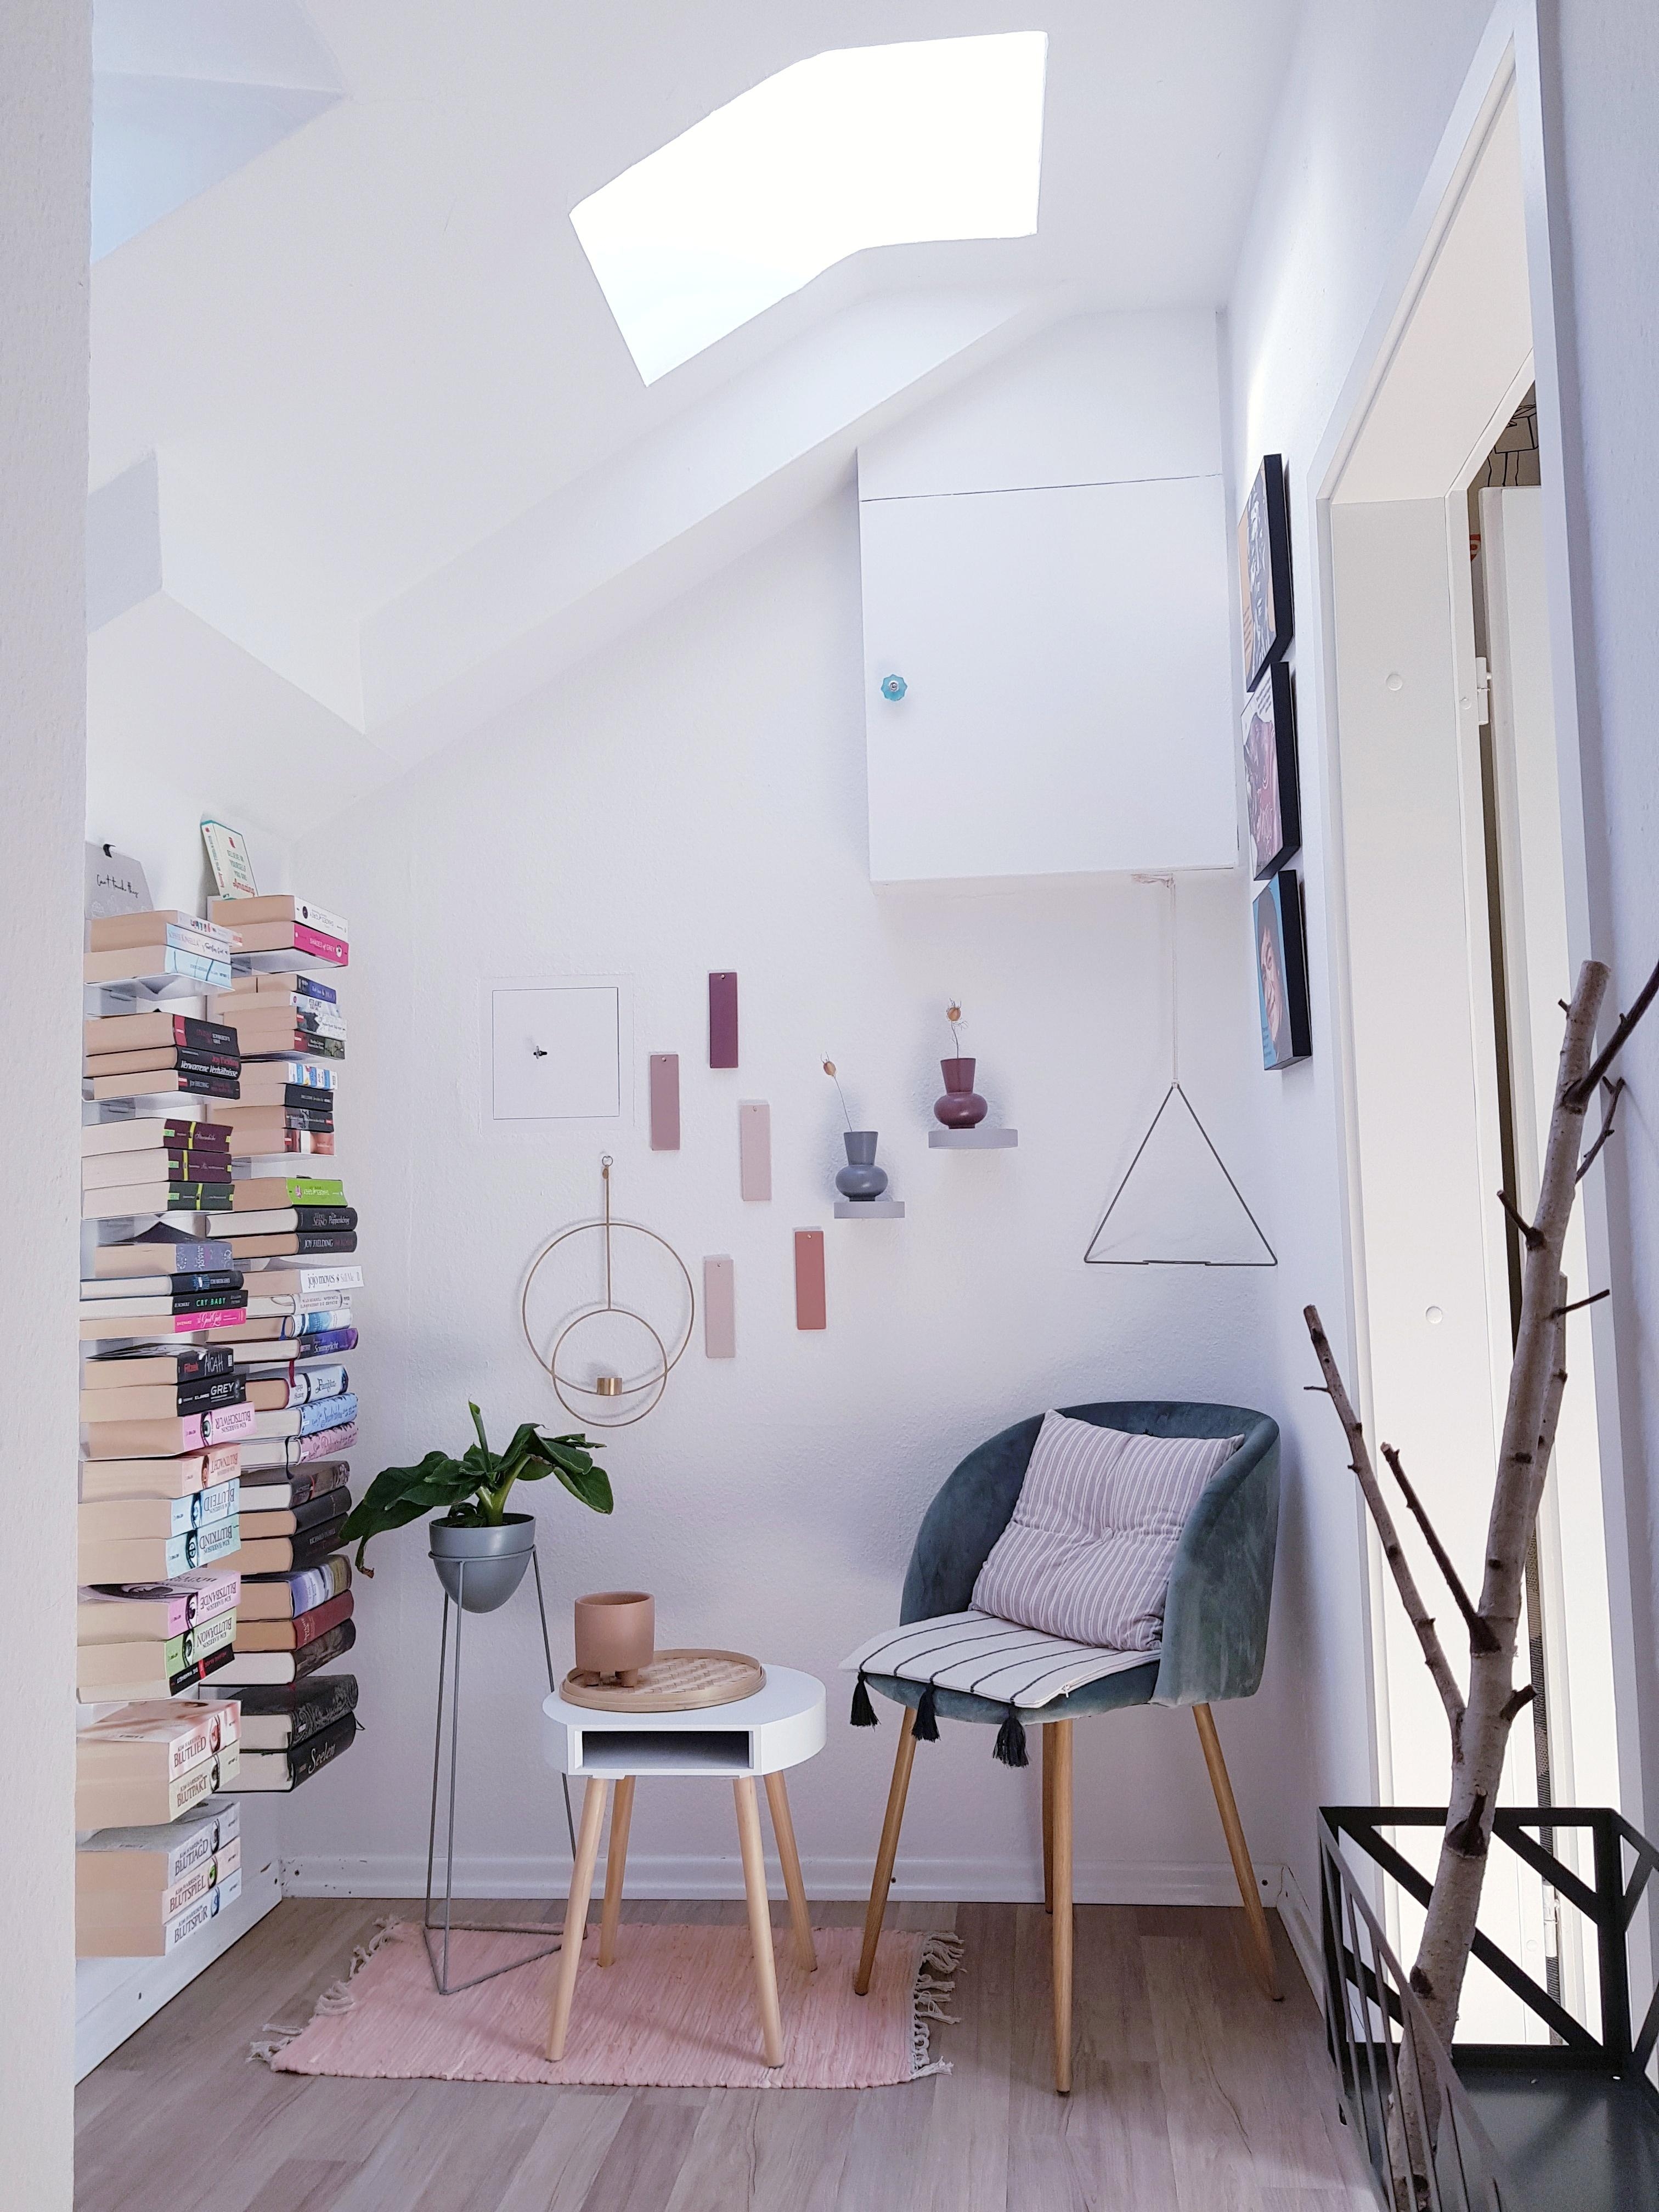 Kein Platz für ein riesen Bücherregal? Kein Problem! Die schwebenden Regale passen in die kleinste Ecke! #myflyingspace 